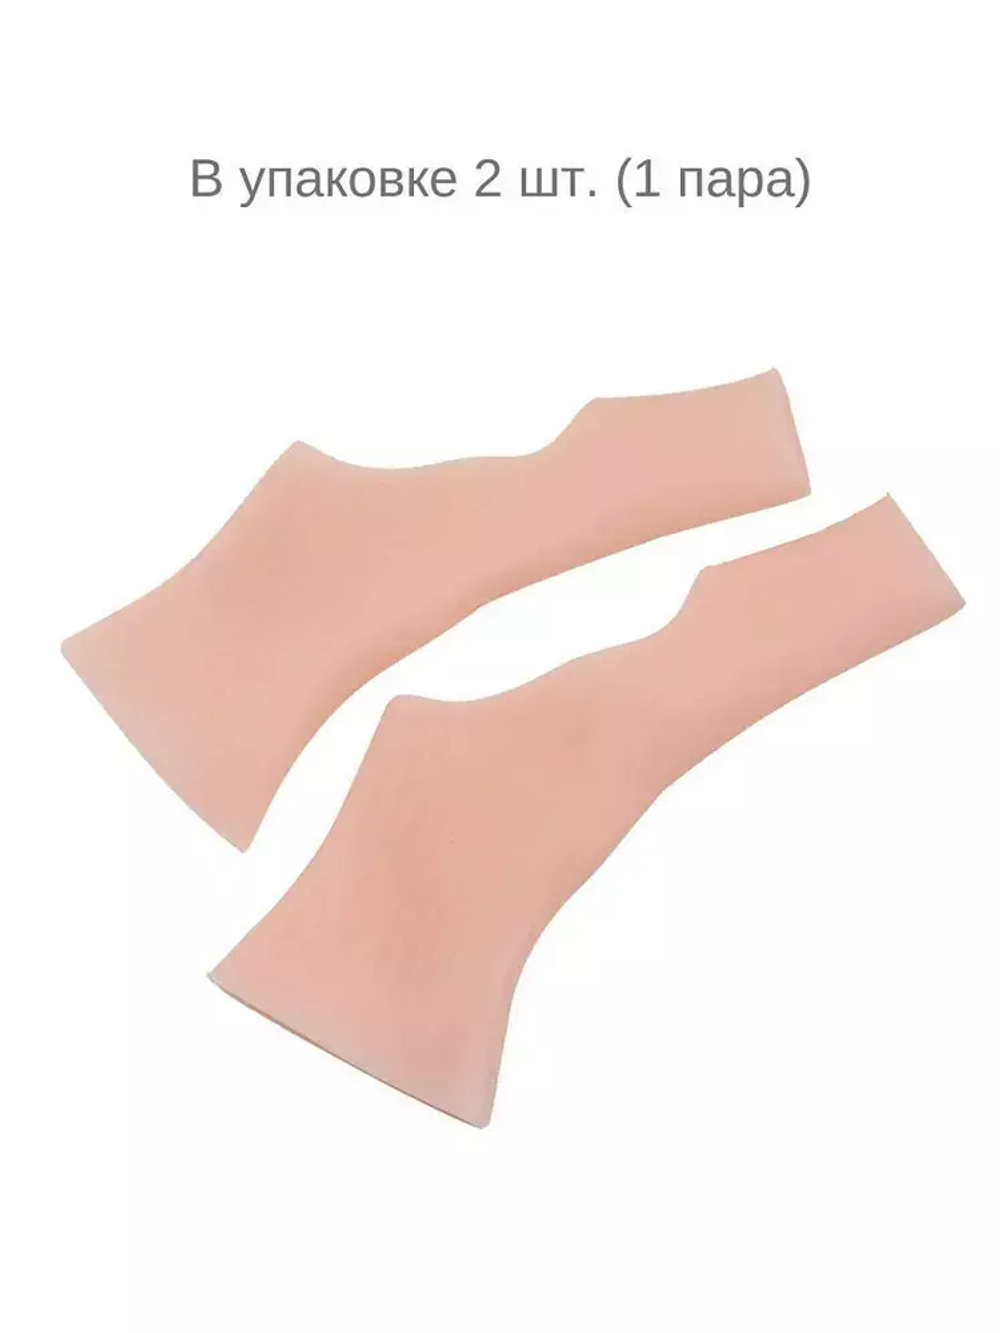 Суппорт лучезапястного сустава и большого пальца руки гелевый (для сухой кожи), 2 шт.